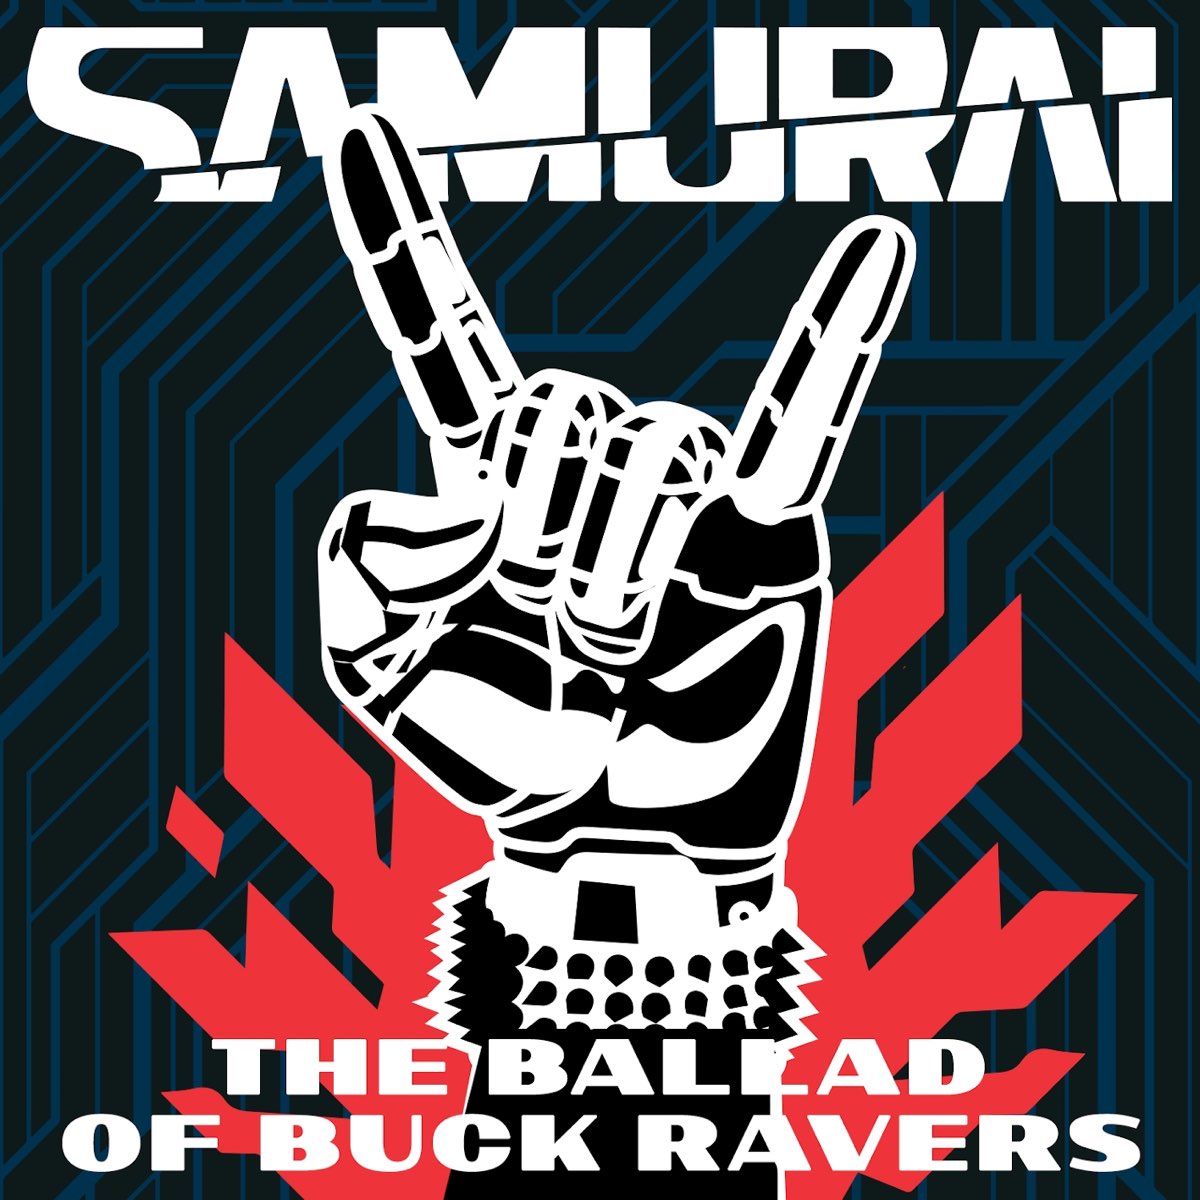 Samurai cyberpunk текст фото 29